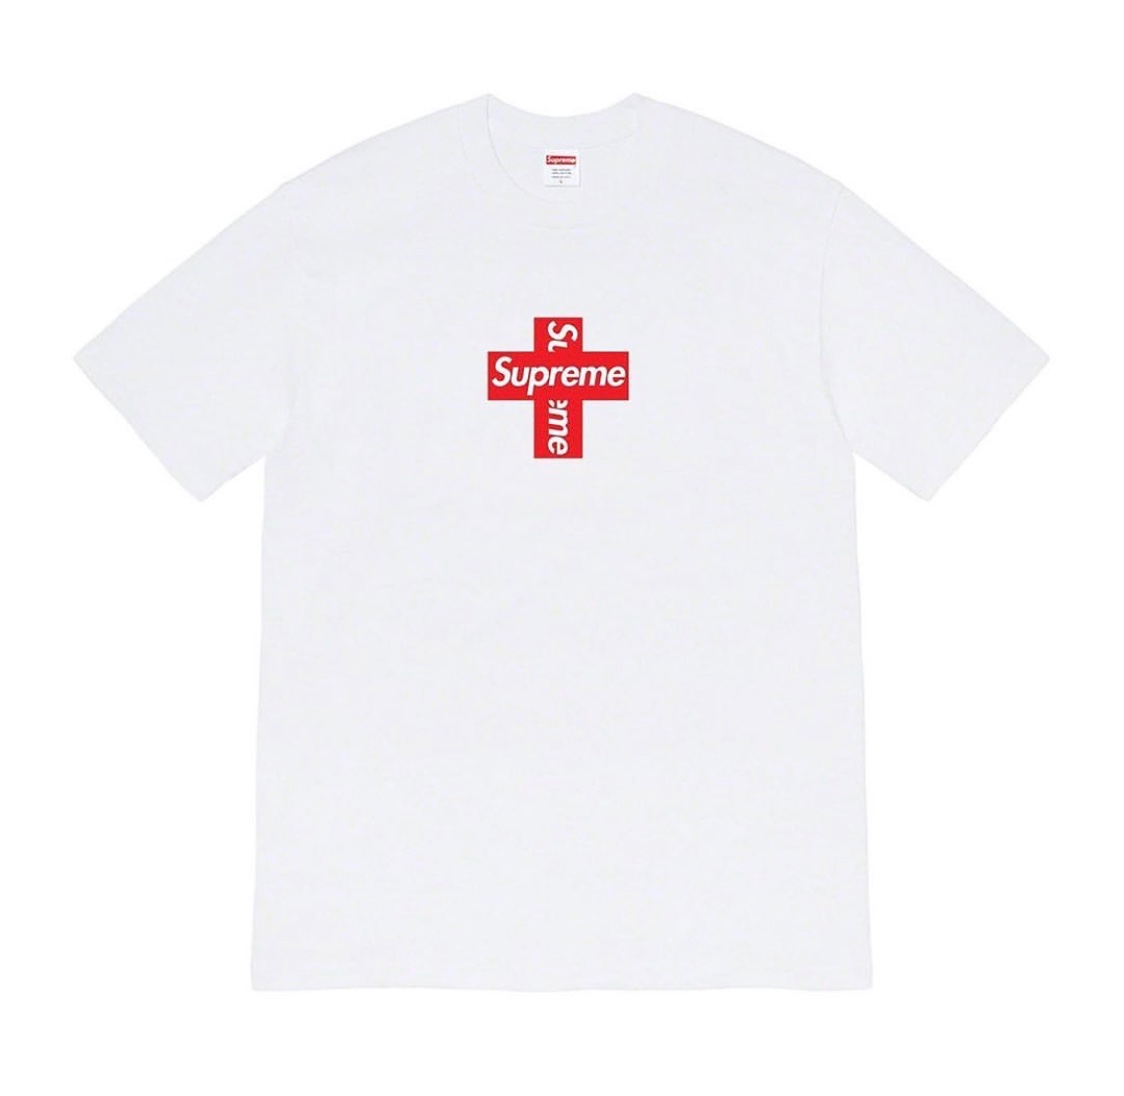 Supreme Cross Box Logo: Anche T-shirts oltre a Hoodies in arrivo per la